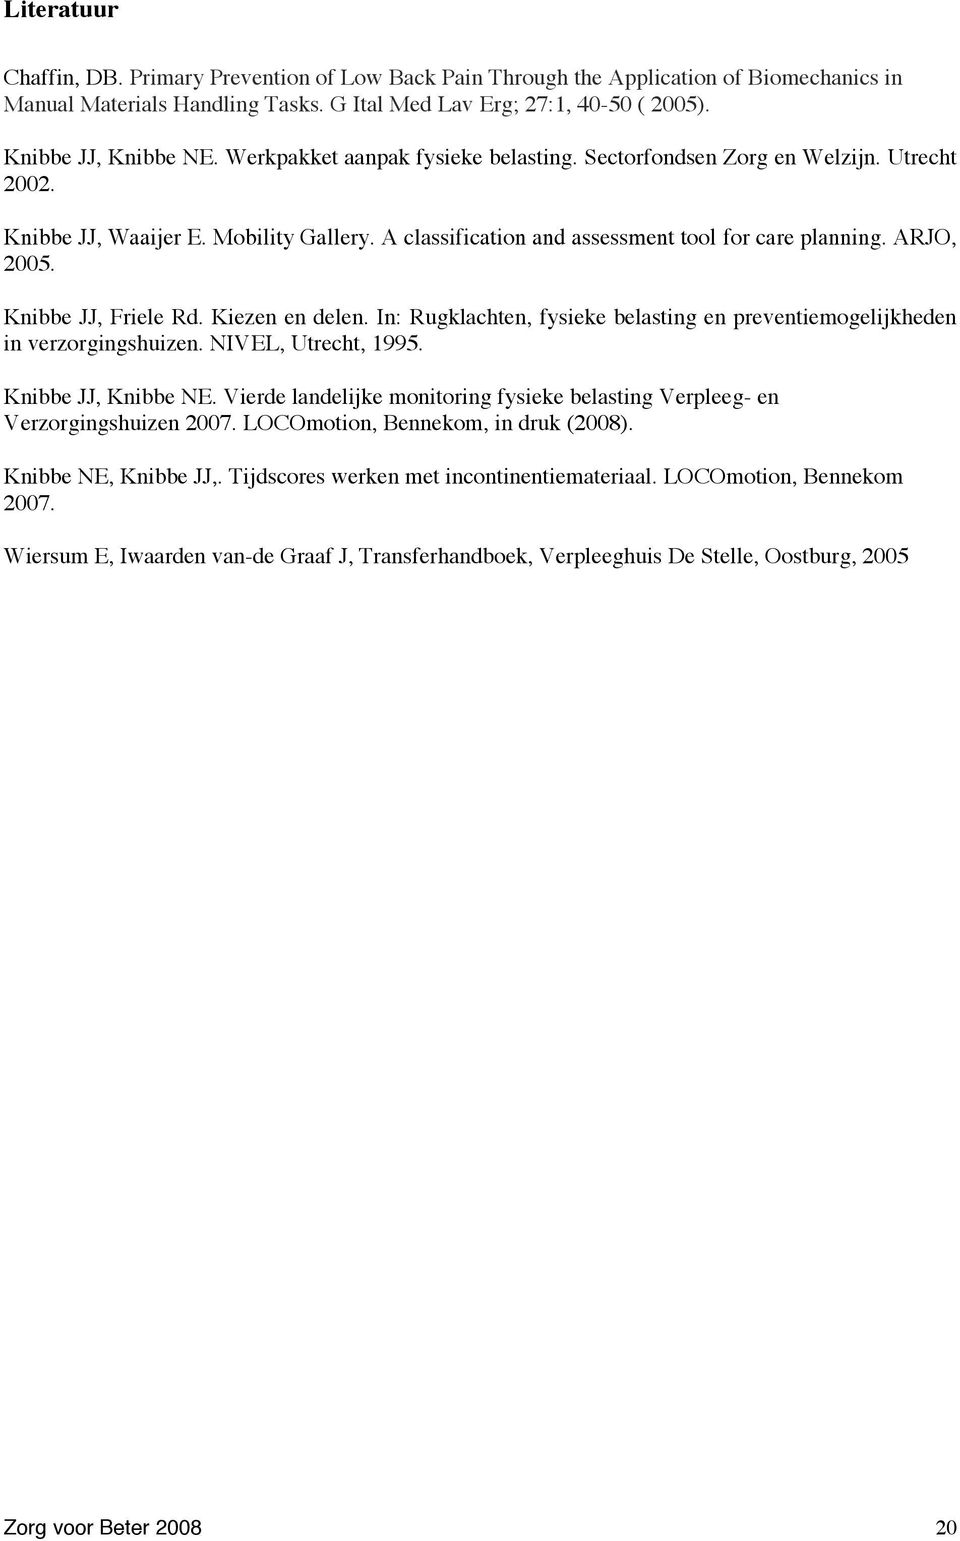 Knibbe JJ, Friele Rd. Kiezen en delen. In: Rugklachten, fysieke belasting en preventiemogelijkheden in verzorgingshuizen. NIVEL, Utrecht, 1995. Knibbe JJ, Knibbe NE.